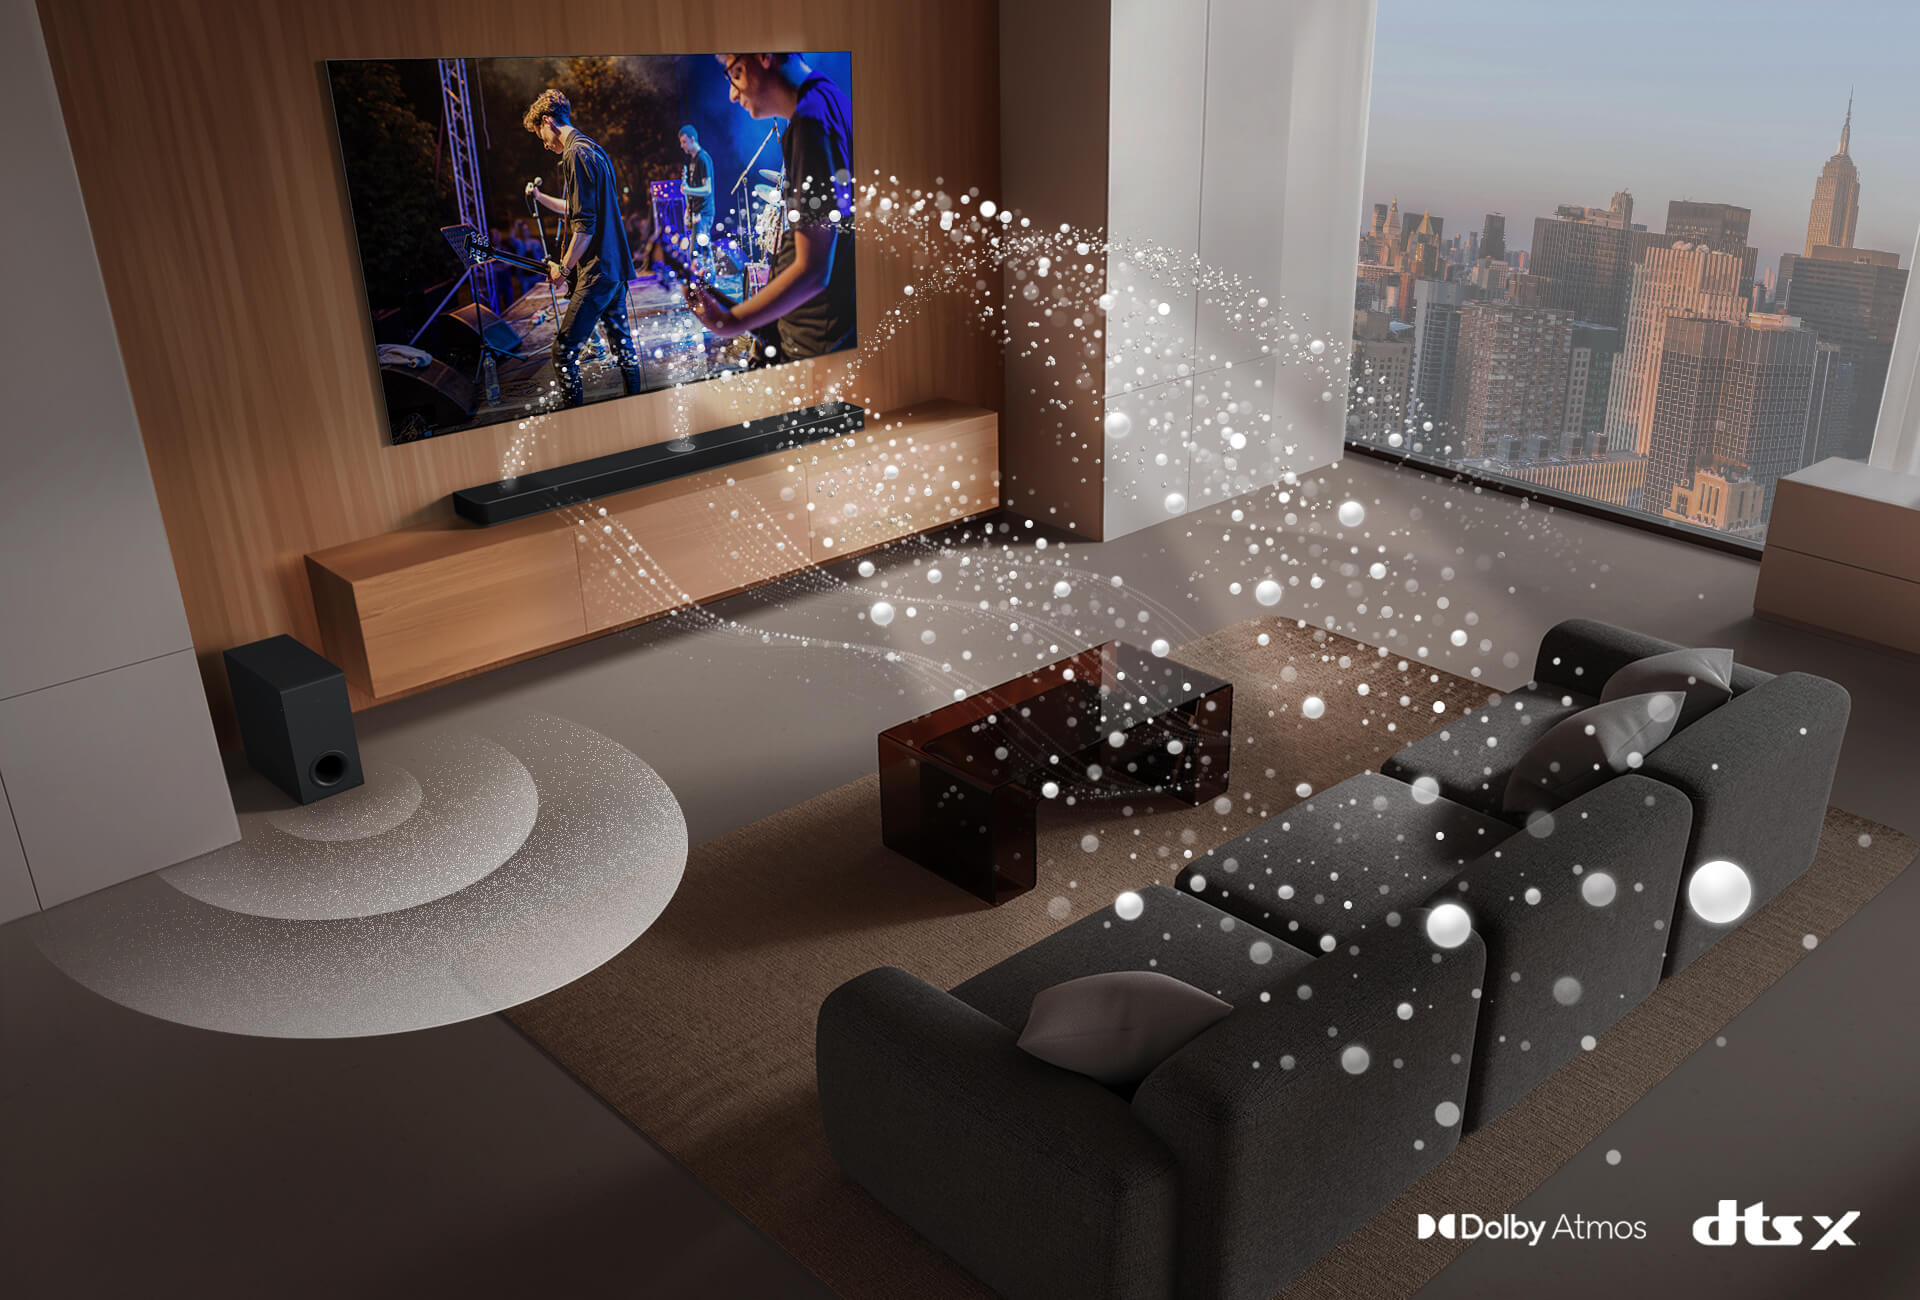 LG TV, LG Soundbar, hintere Lautsprecher und ein Subwoofer befinden sich in einem Wohnzimmer in einem Wolkenkratzer und spielen eine Musikaufführung. Weiße, aus Tröpfchen bestehende Klangwellen werden von der Soundbar und den hinteren Lautsprechern projiziert und um das Sofa und den Wohnraum geschlungen. Ein Subwoofer erzeugt einen Klangeffekt von unten. Dolby Atmos-Logo DTS X-Logo